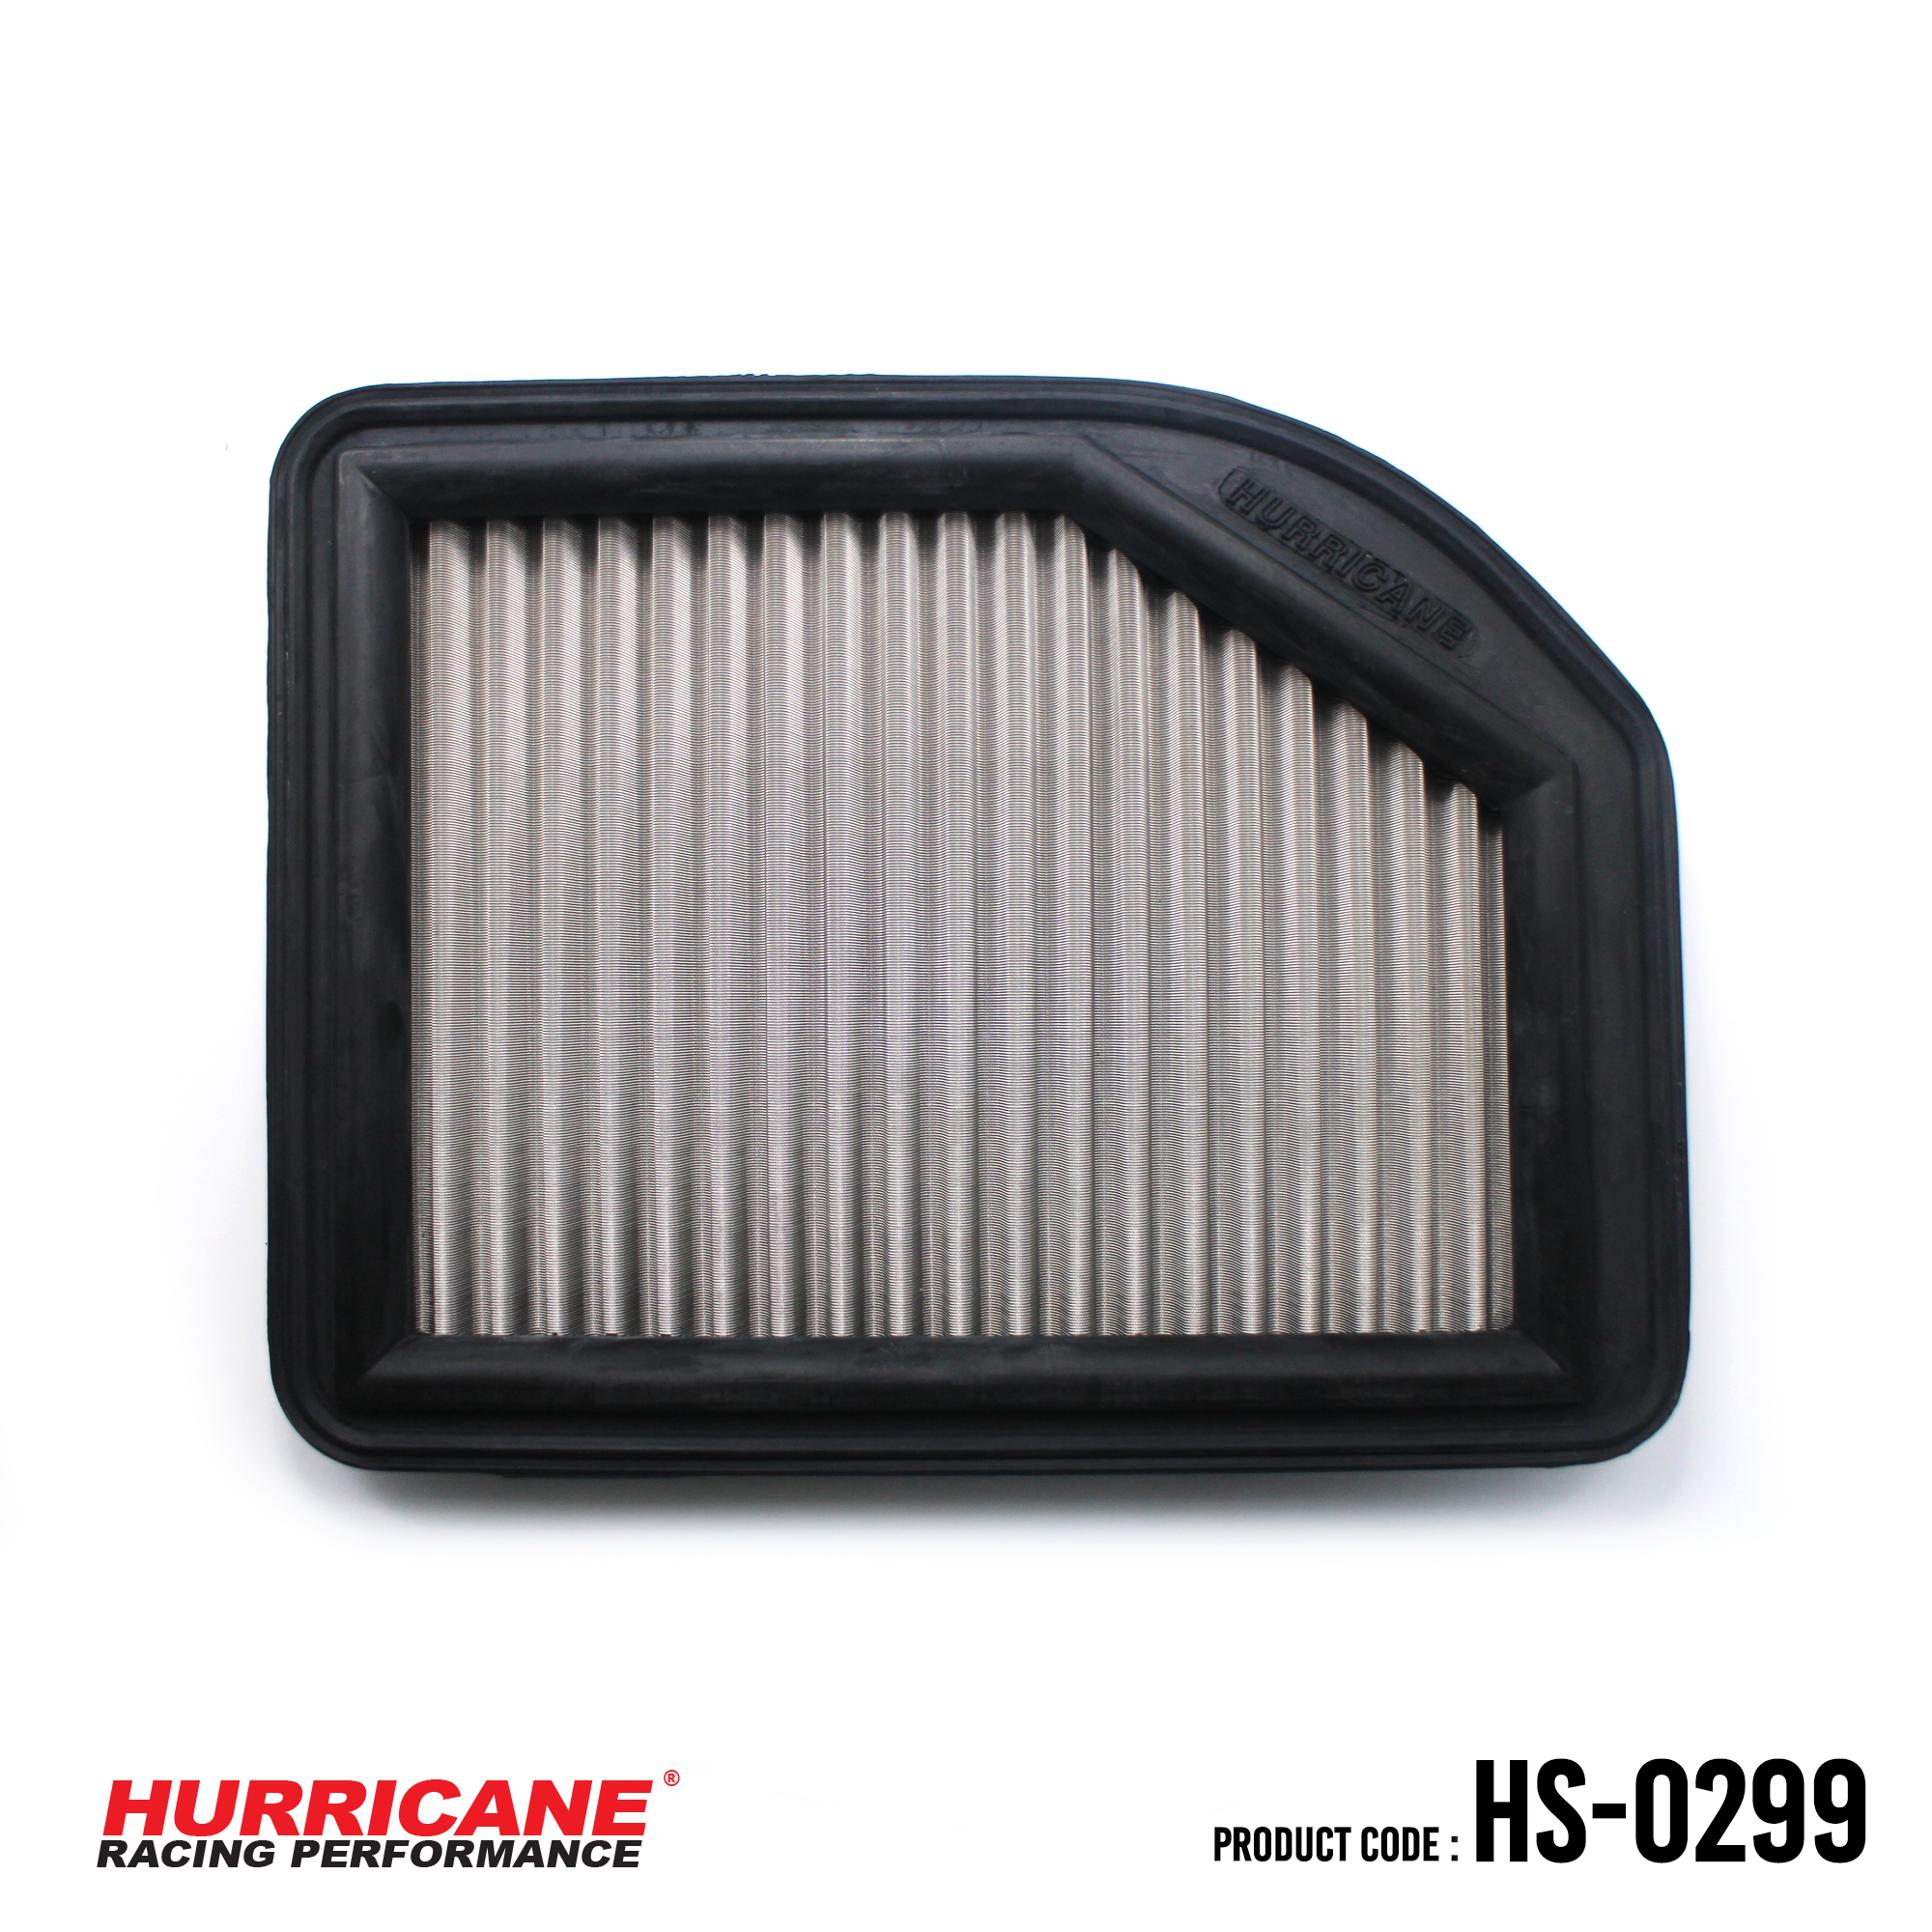 HURRICANE STAINLESS STEEL AIR FILTER FOR HS-0299 Honda